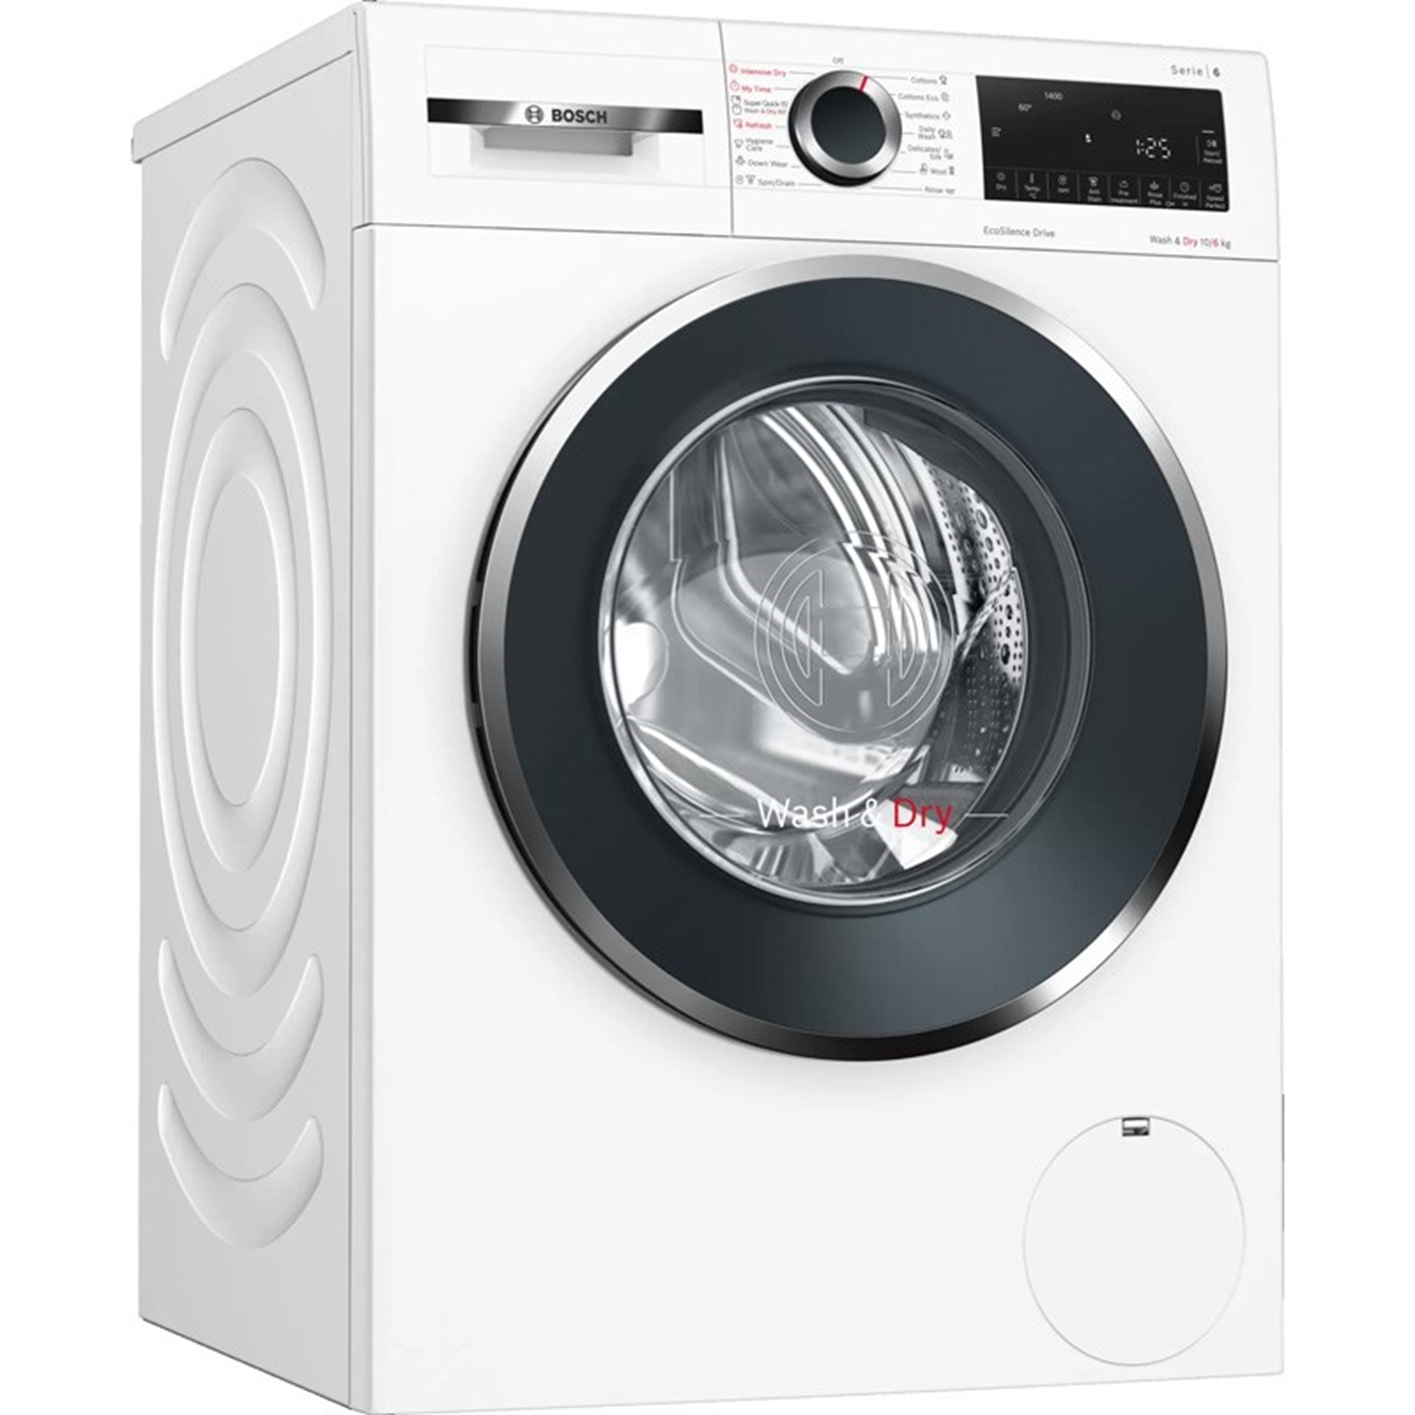 Hình ảnh của Máy giặt BOSCH WNA14400SG